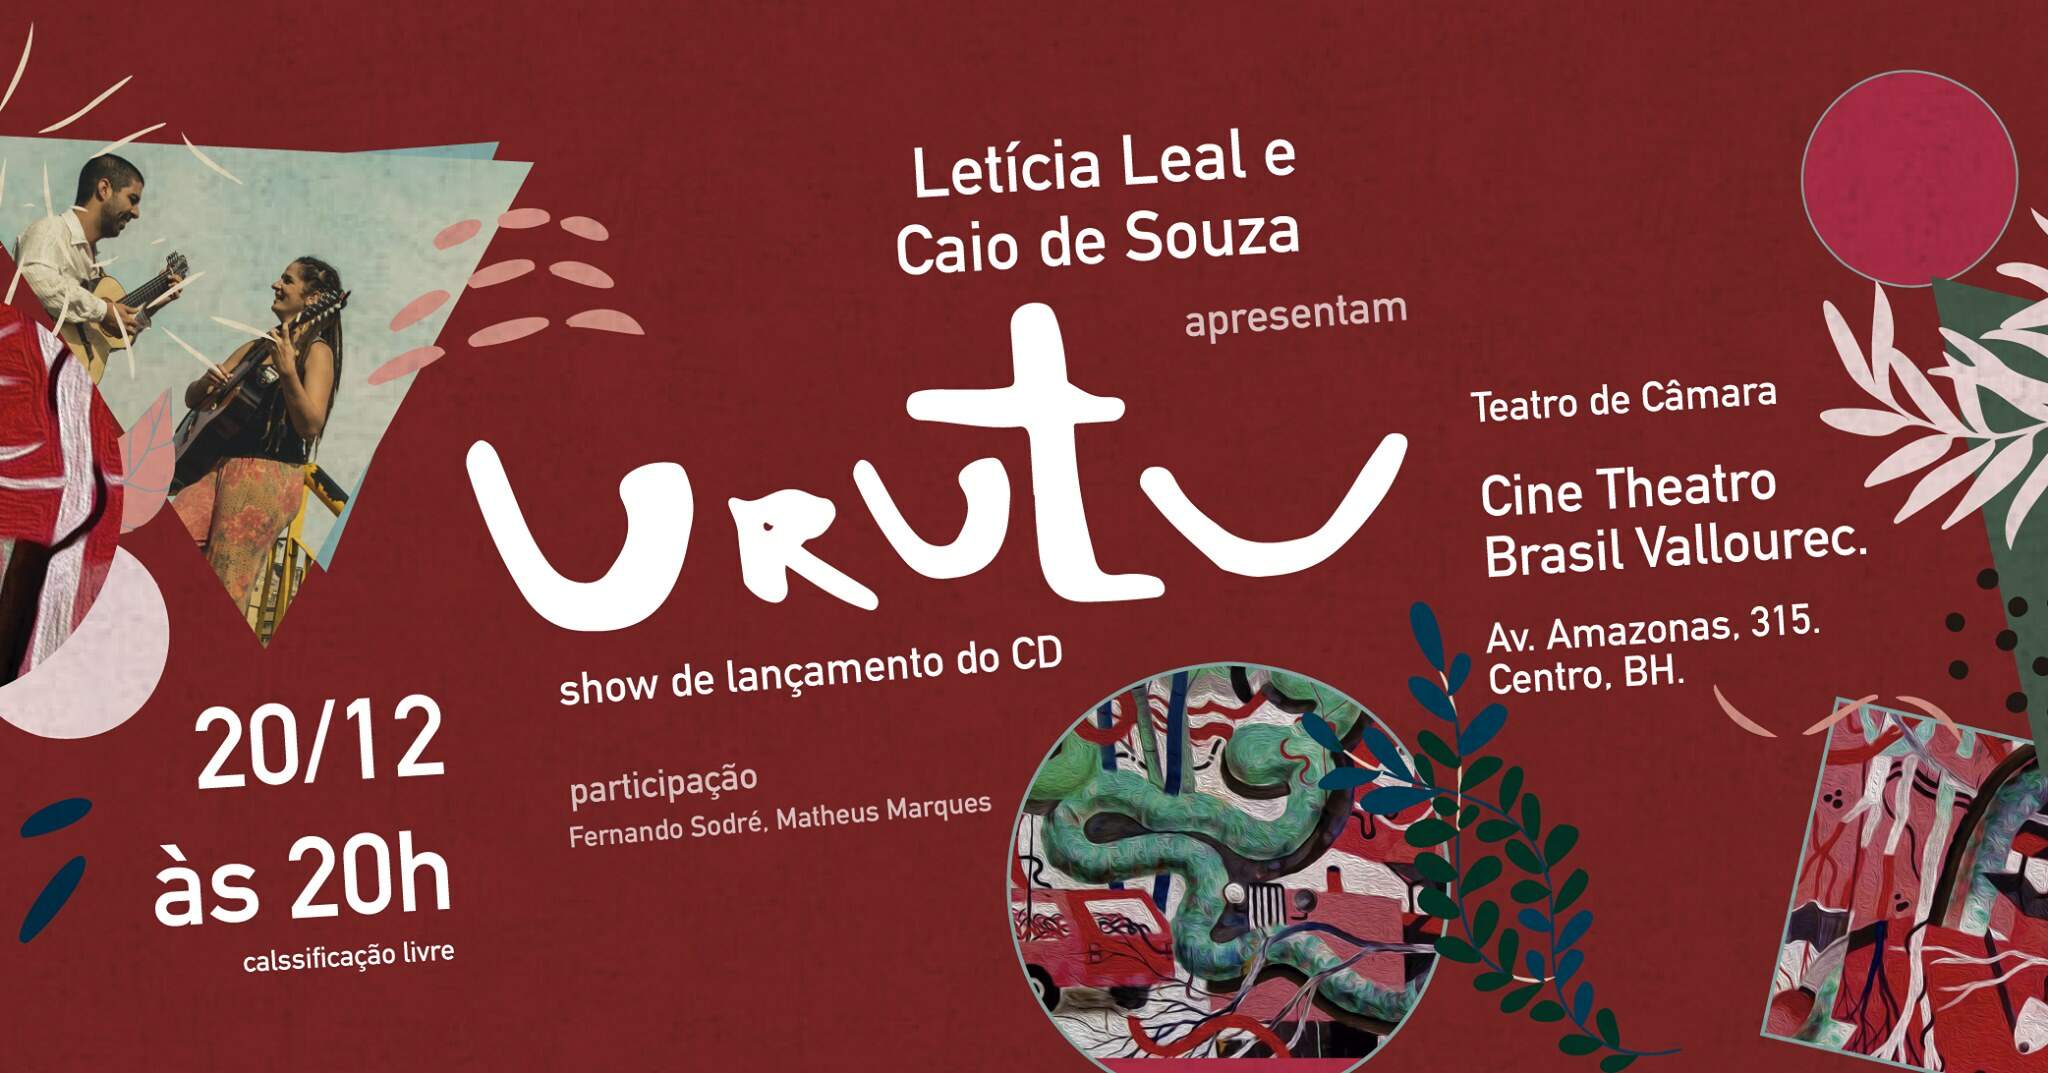 Letícia Leal e Caio Souza apresentam "Urutu" - Lançamento